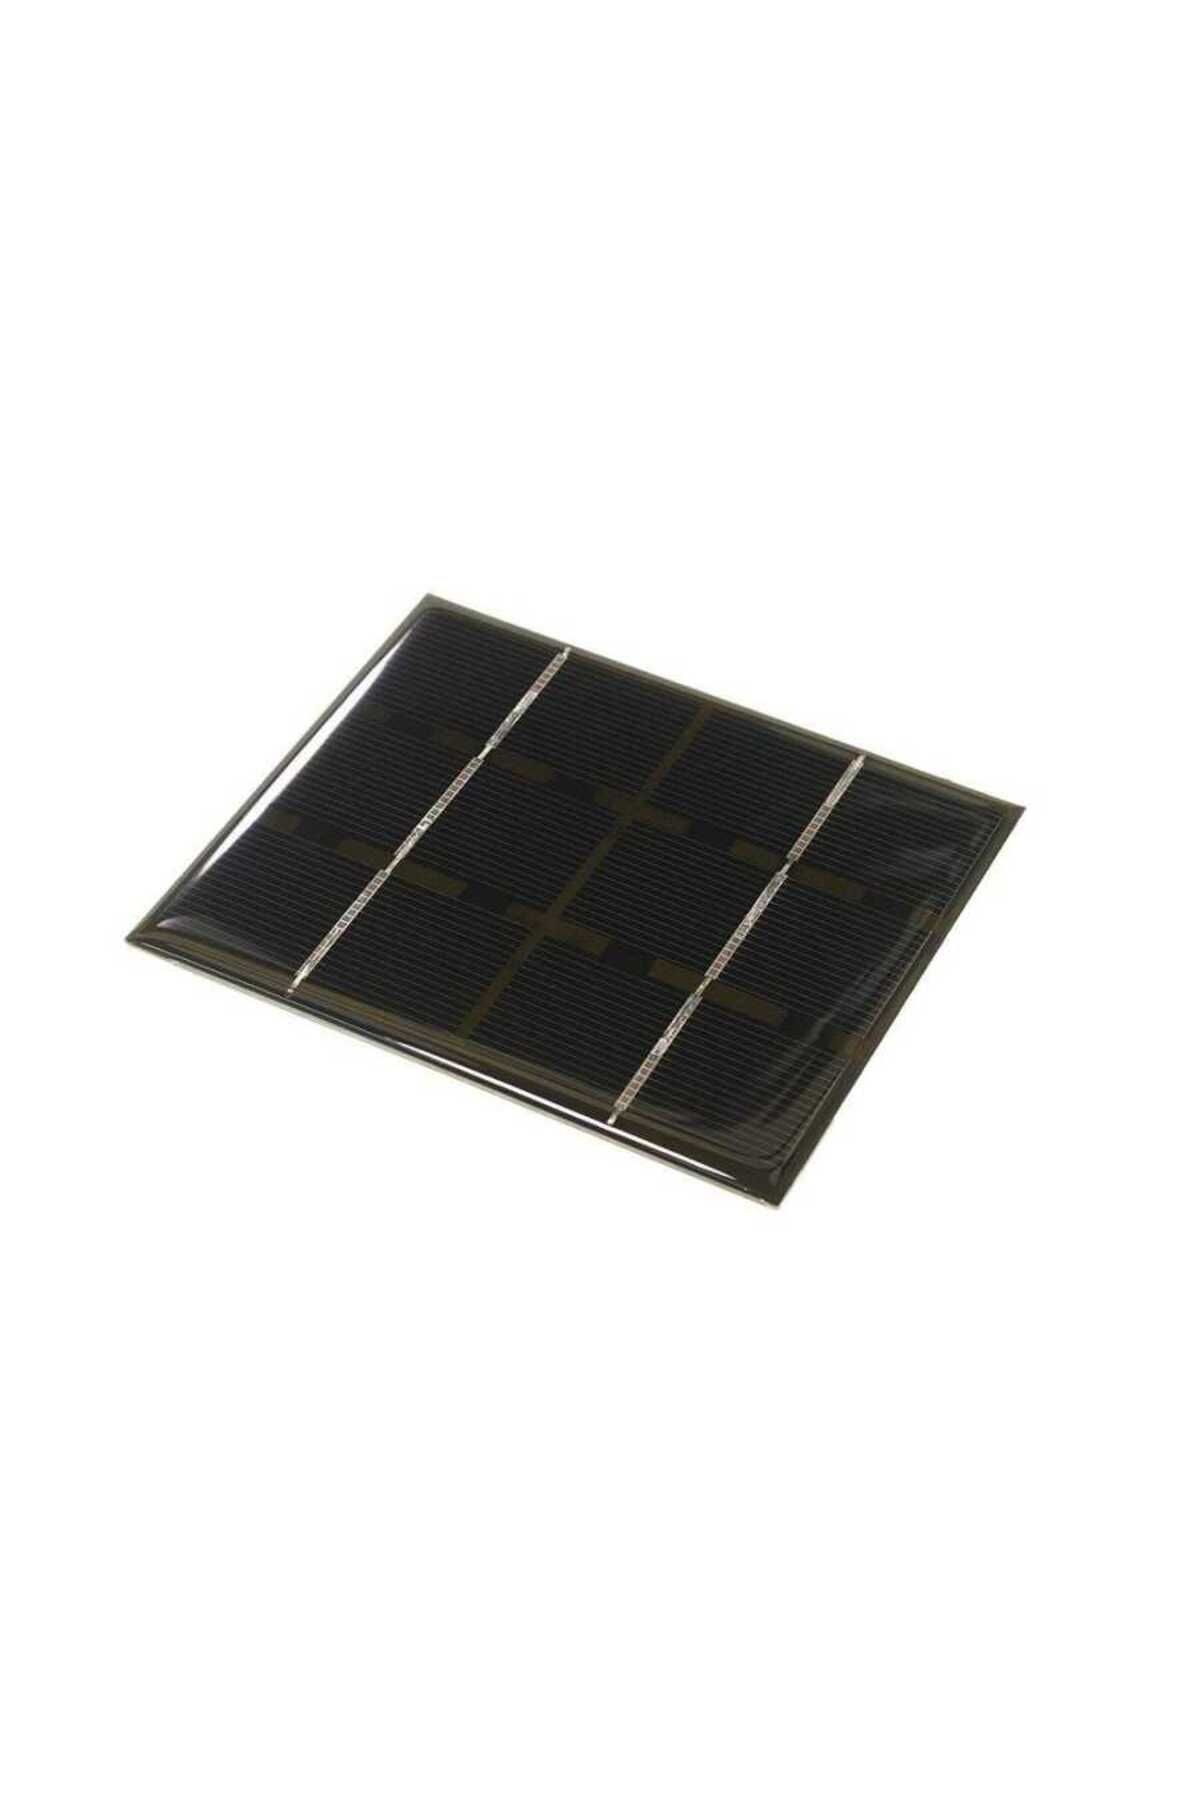 Profuse 3V 500mA Solar Panel - Güneş Pili